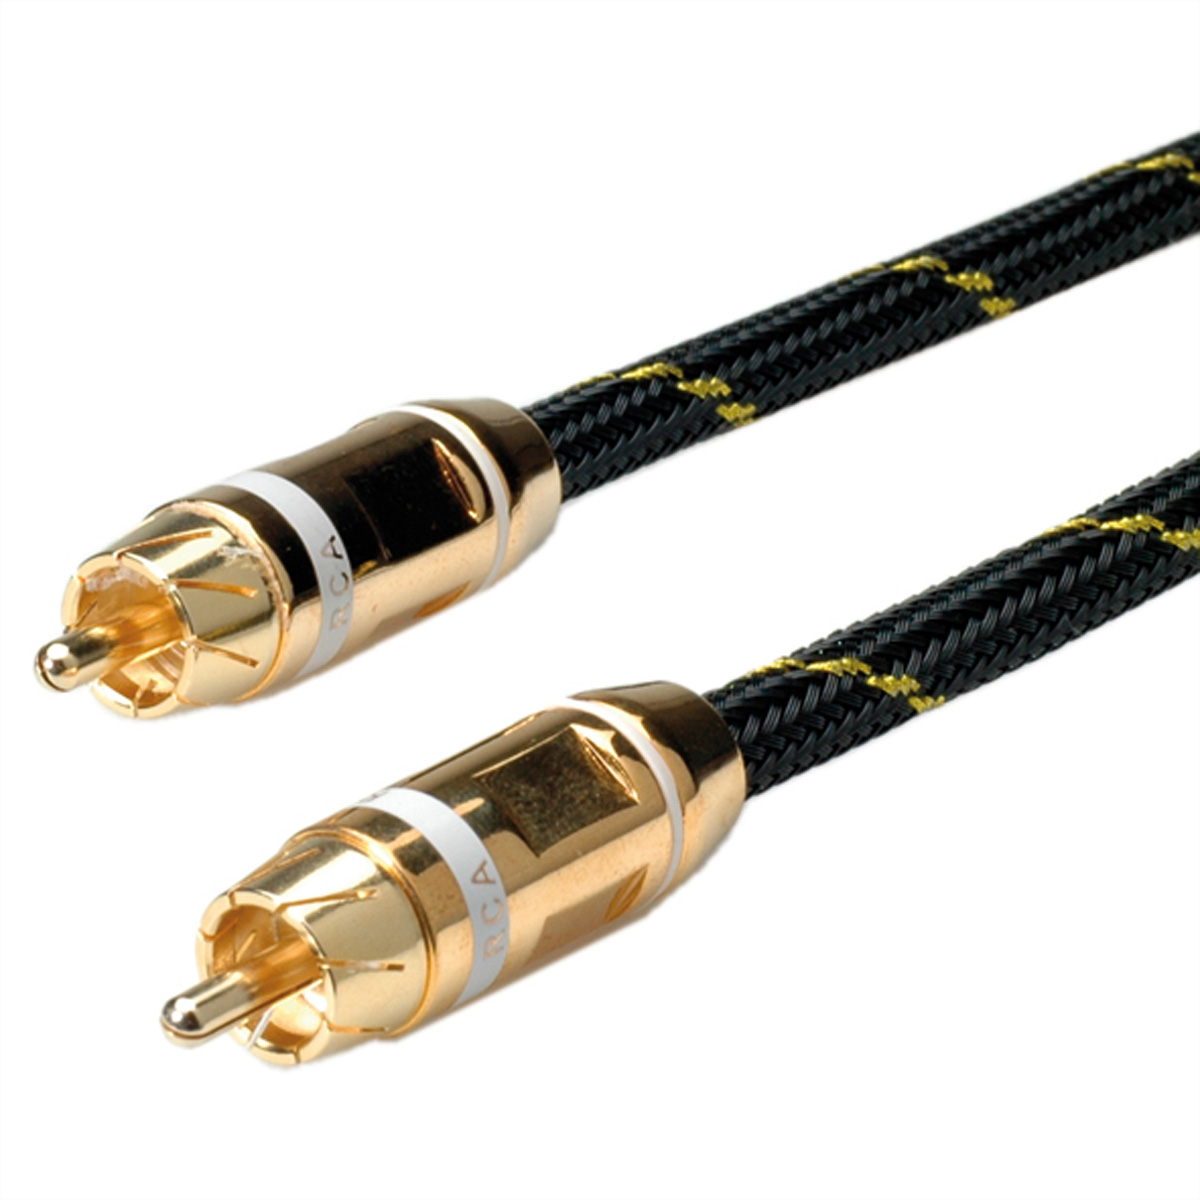 ROLINE GOLD Cinch-Verbindungskabel simplex Stecker m Stecker, weiss, 10 Cinch-Verbindungskabel, 